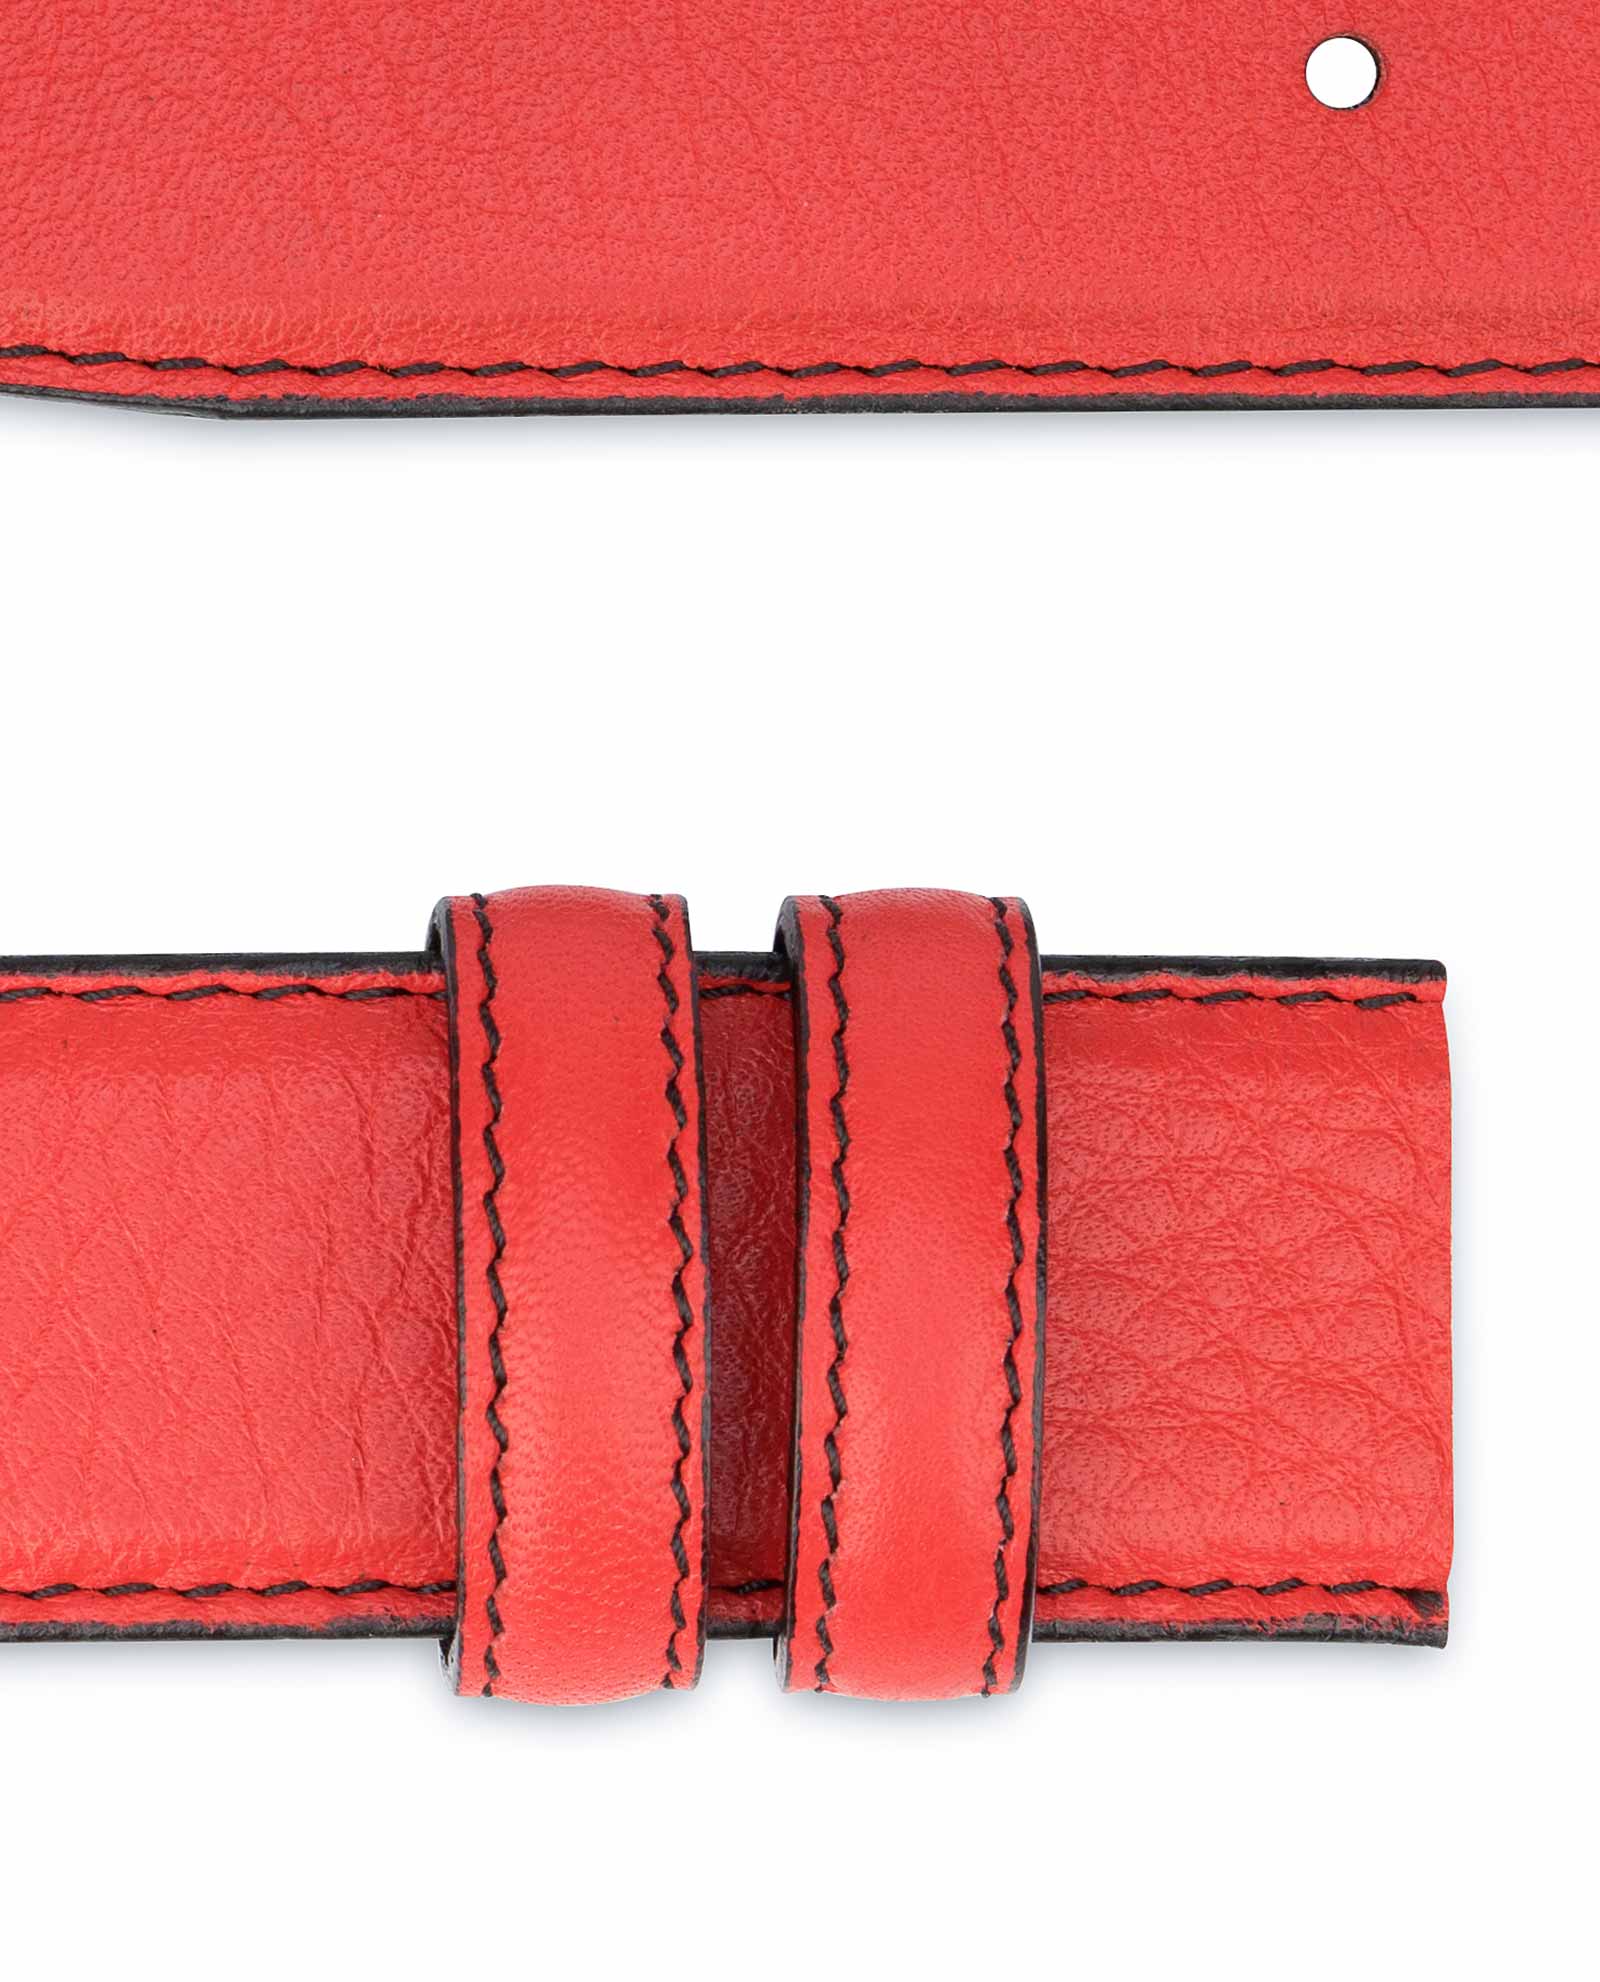 Leffler Leather Goods - Red snakeskin belt